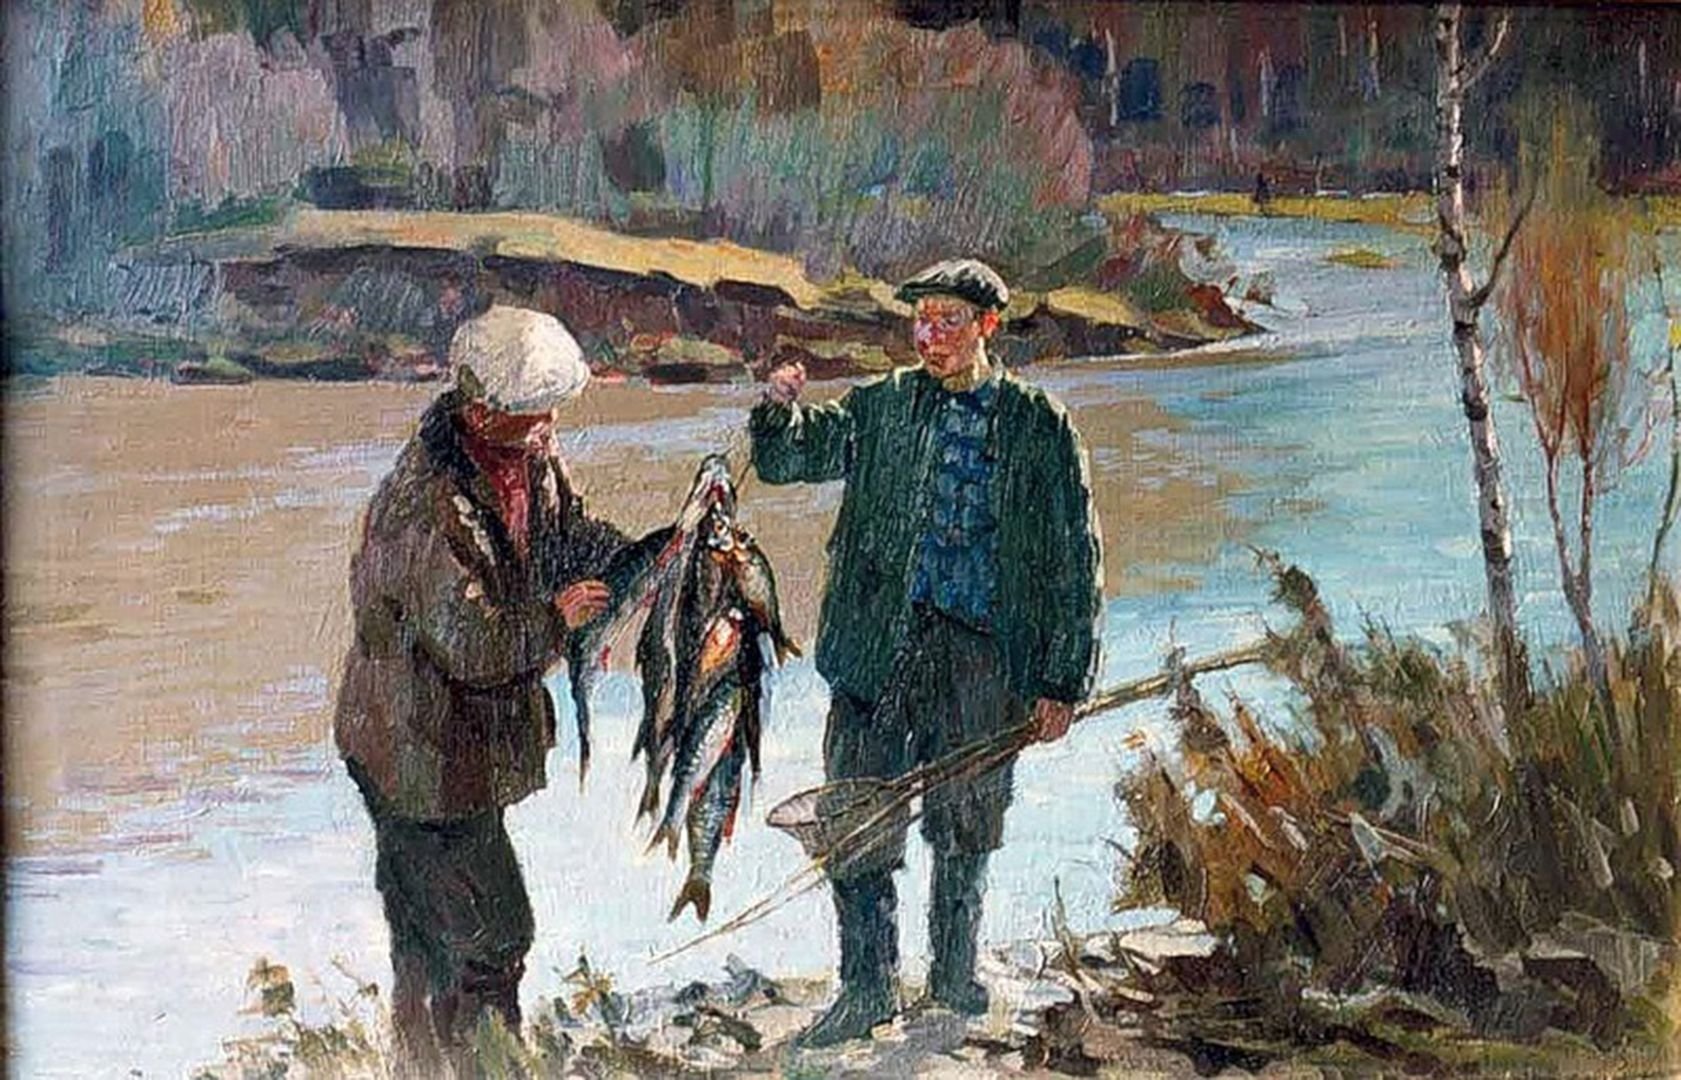 Ловить рыбу 1 словом